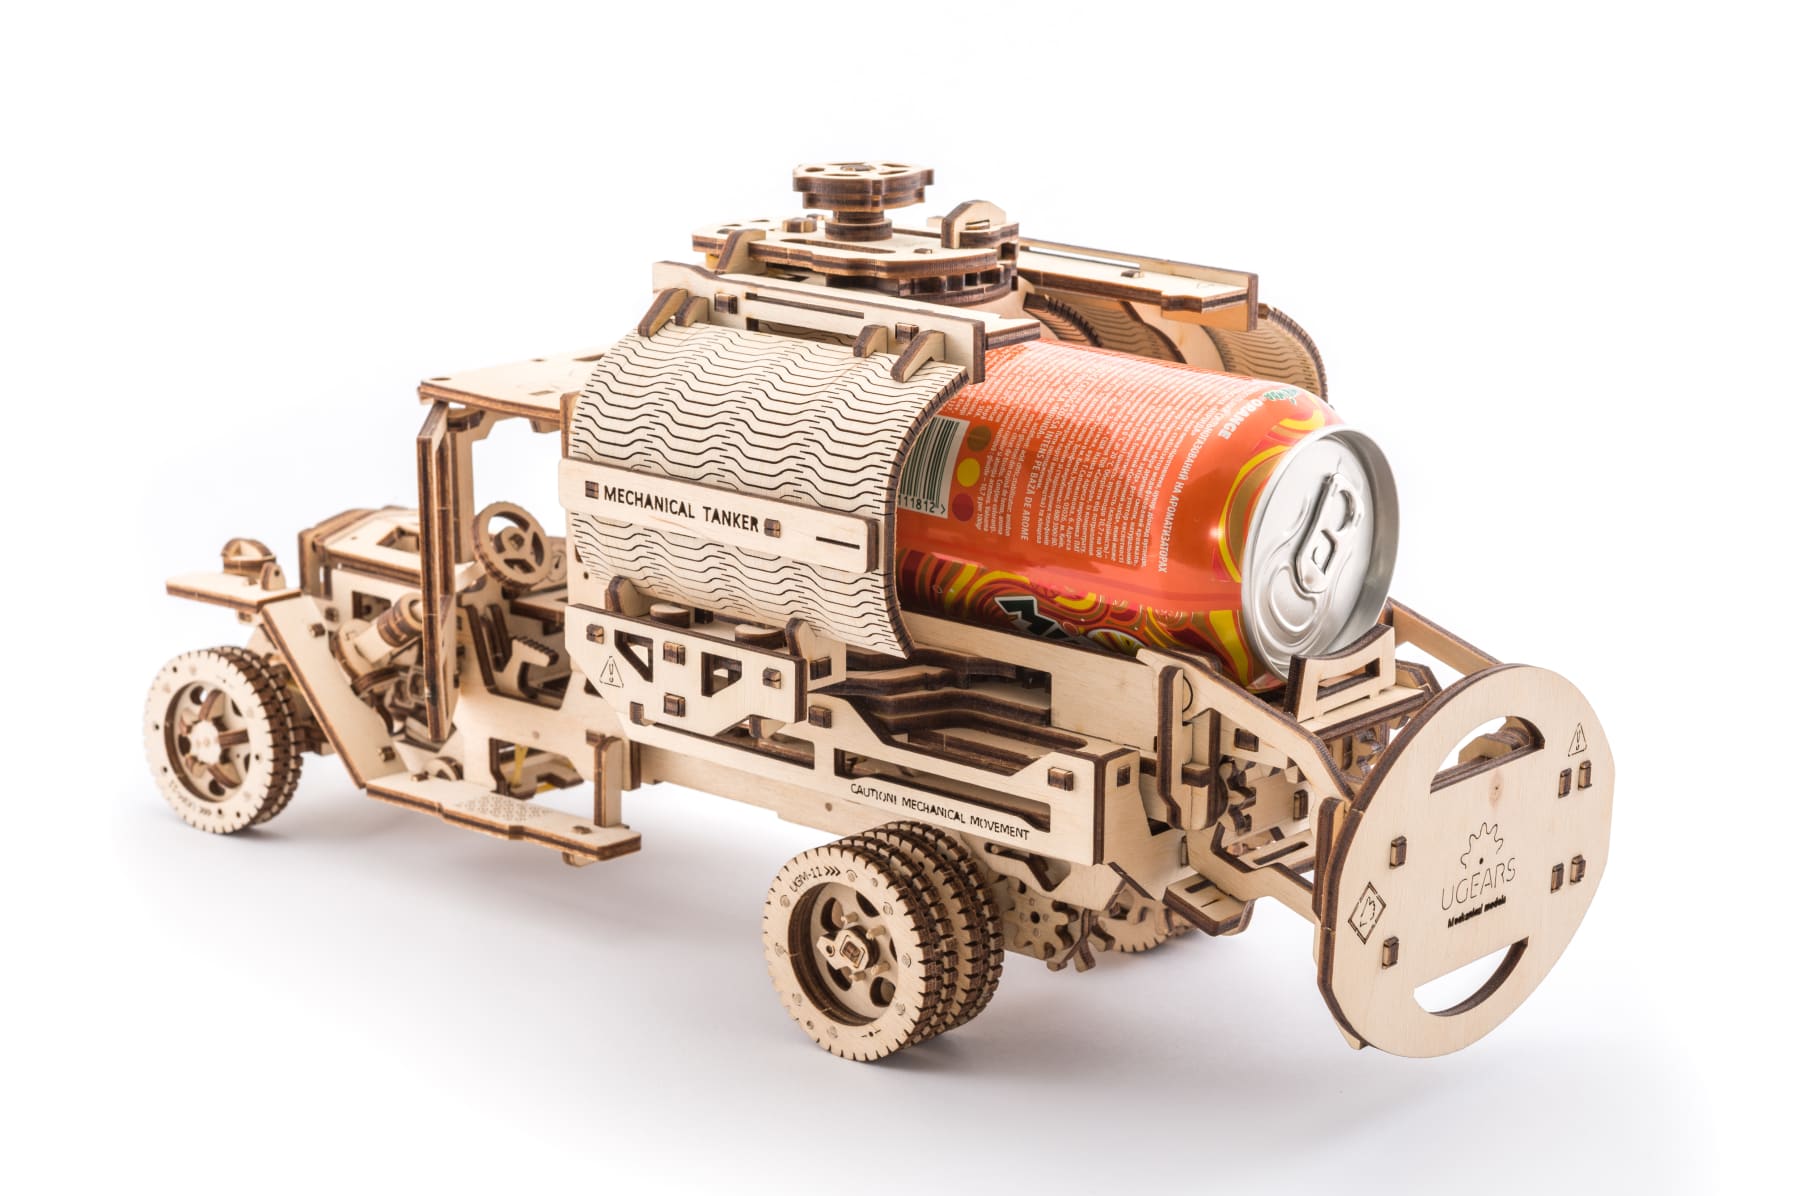 UGEARS: Self-propelled mechanical models by UGEARS — Kickstarter